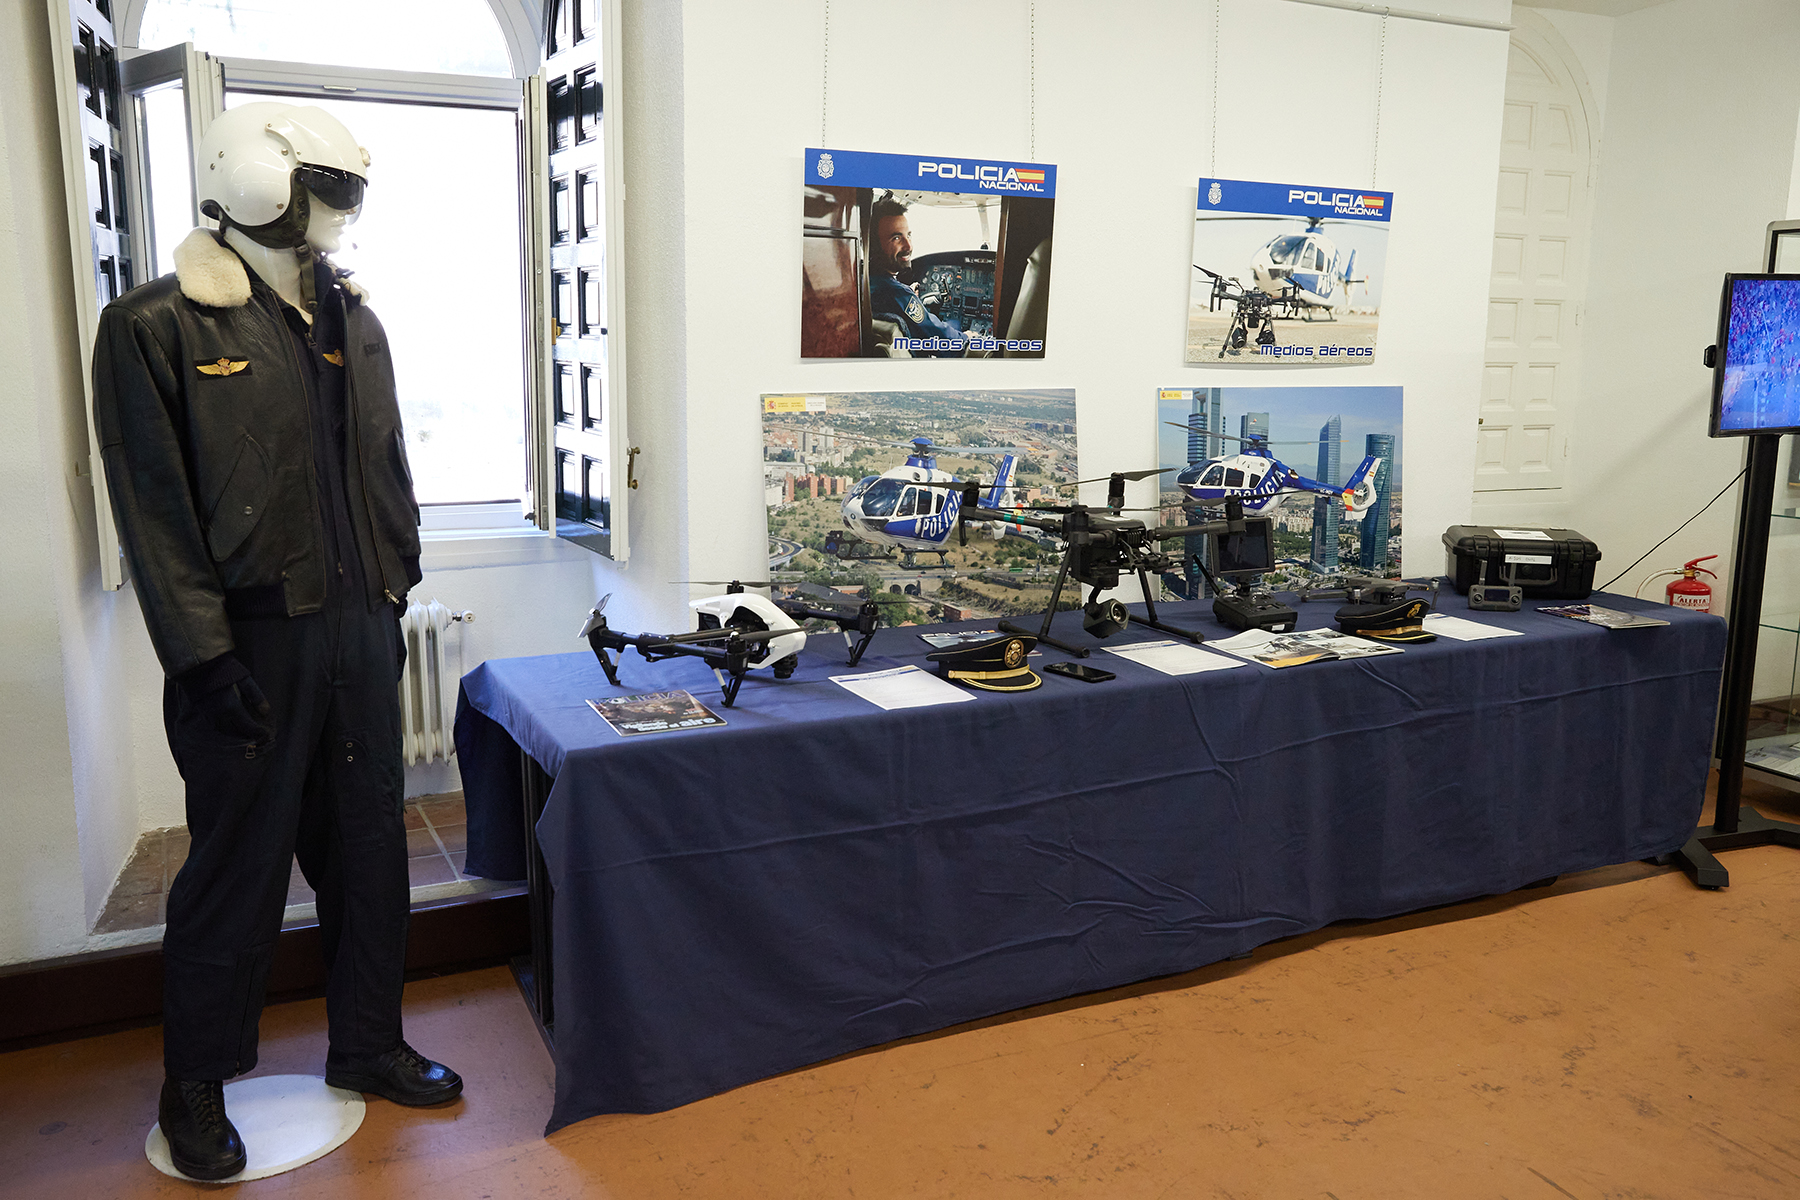 Mesa en la cual se exponen diversos drones utilizados por la Policía Nacional, junto a un maniquí que lleva un traje de los Médios Aéreos.